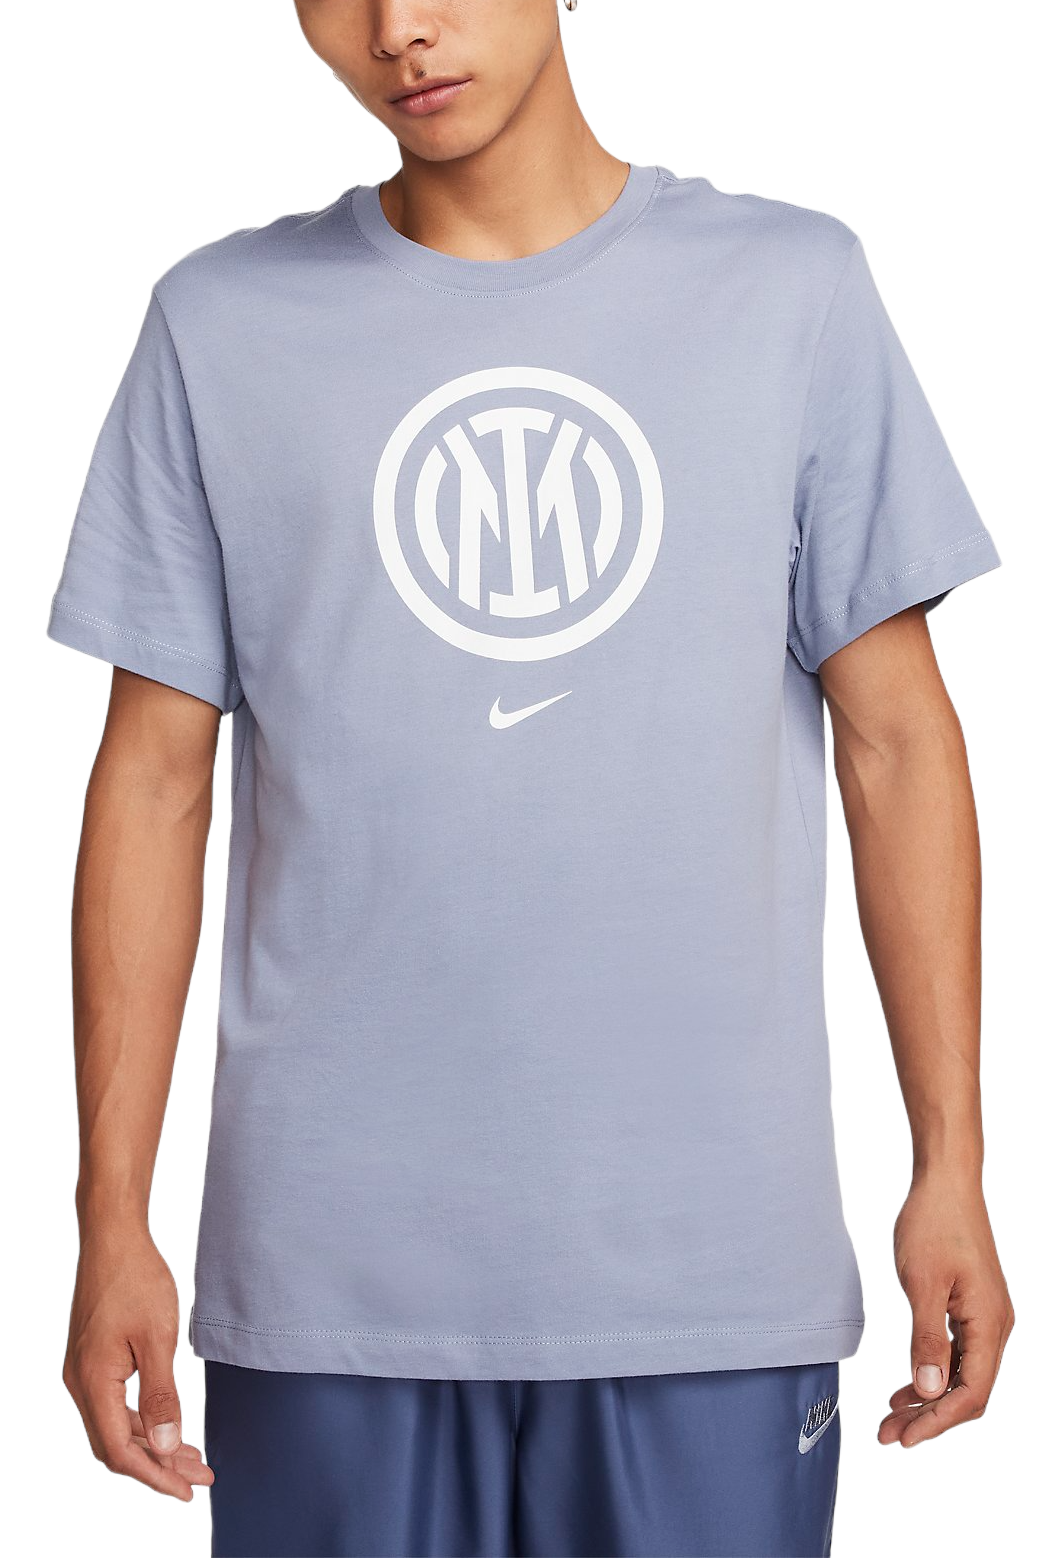 Pánské tričko s krátkým rukávem Nike Intral Milán Crest